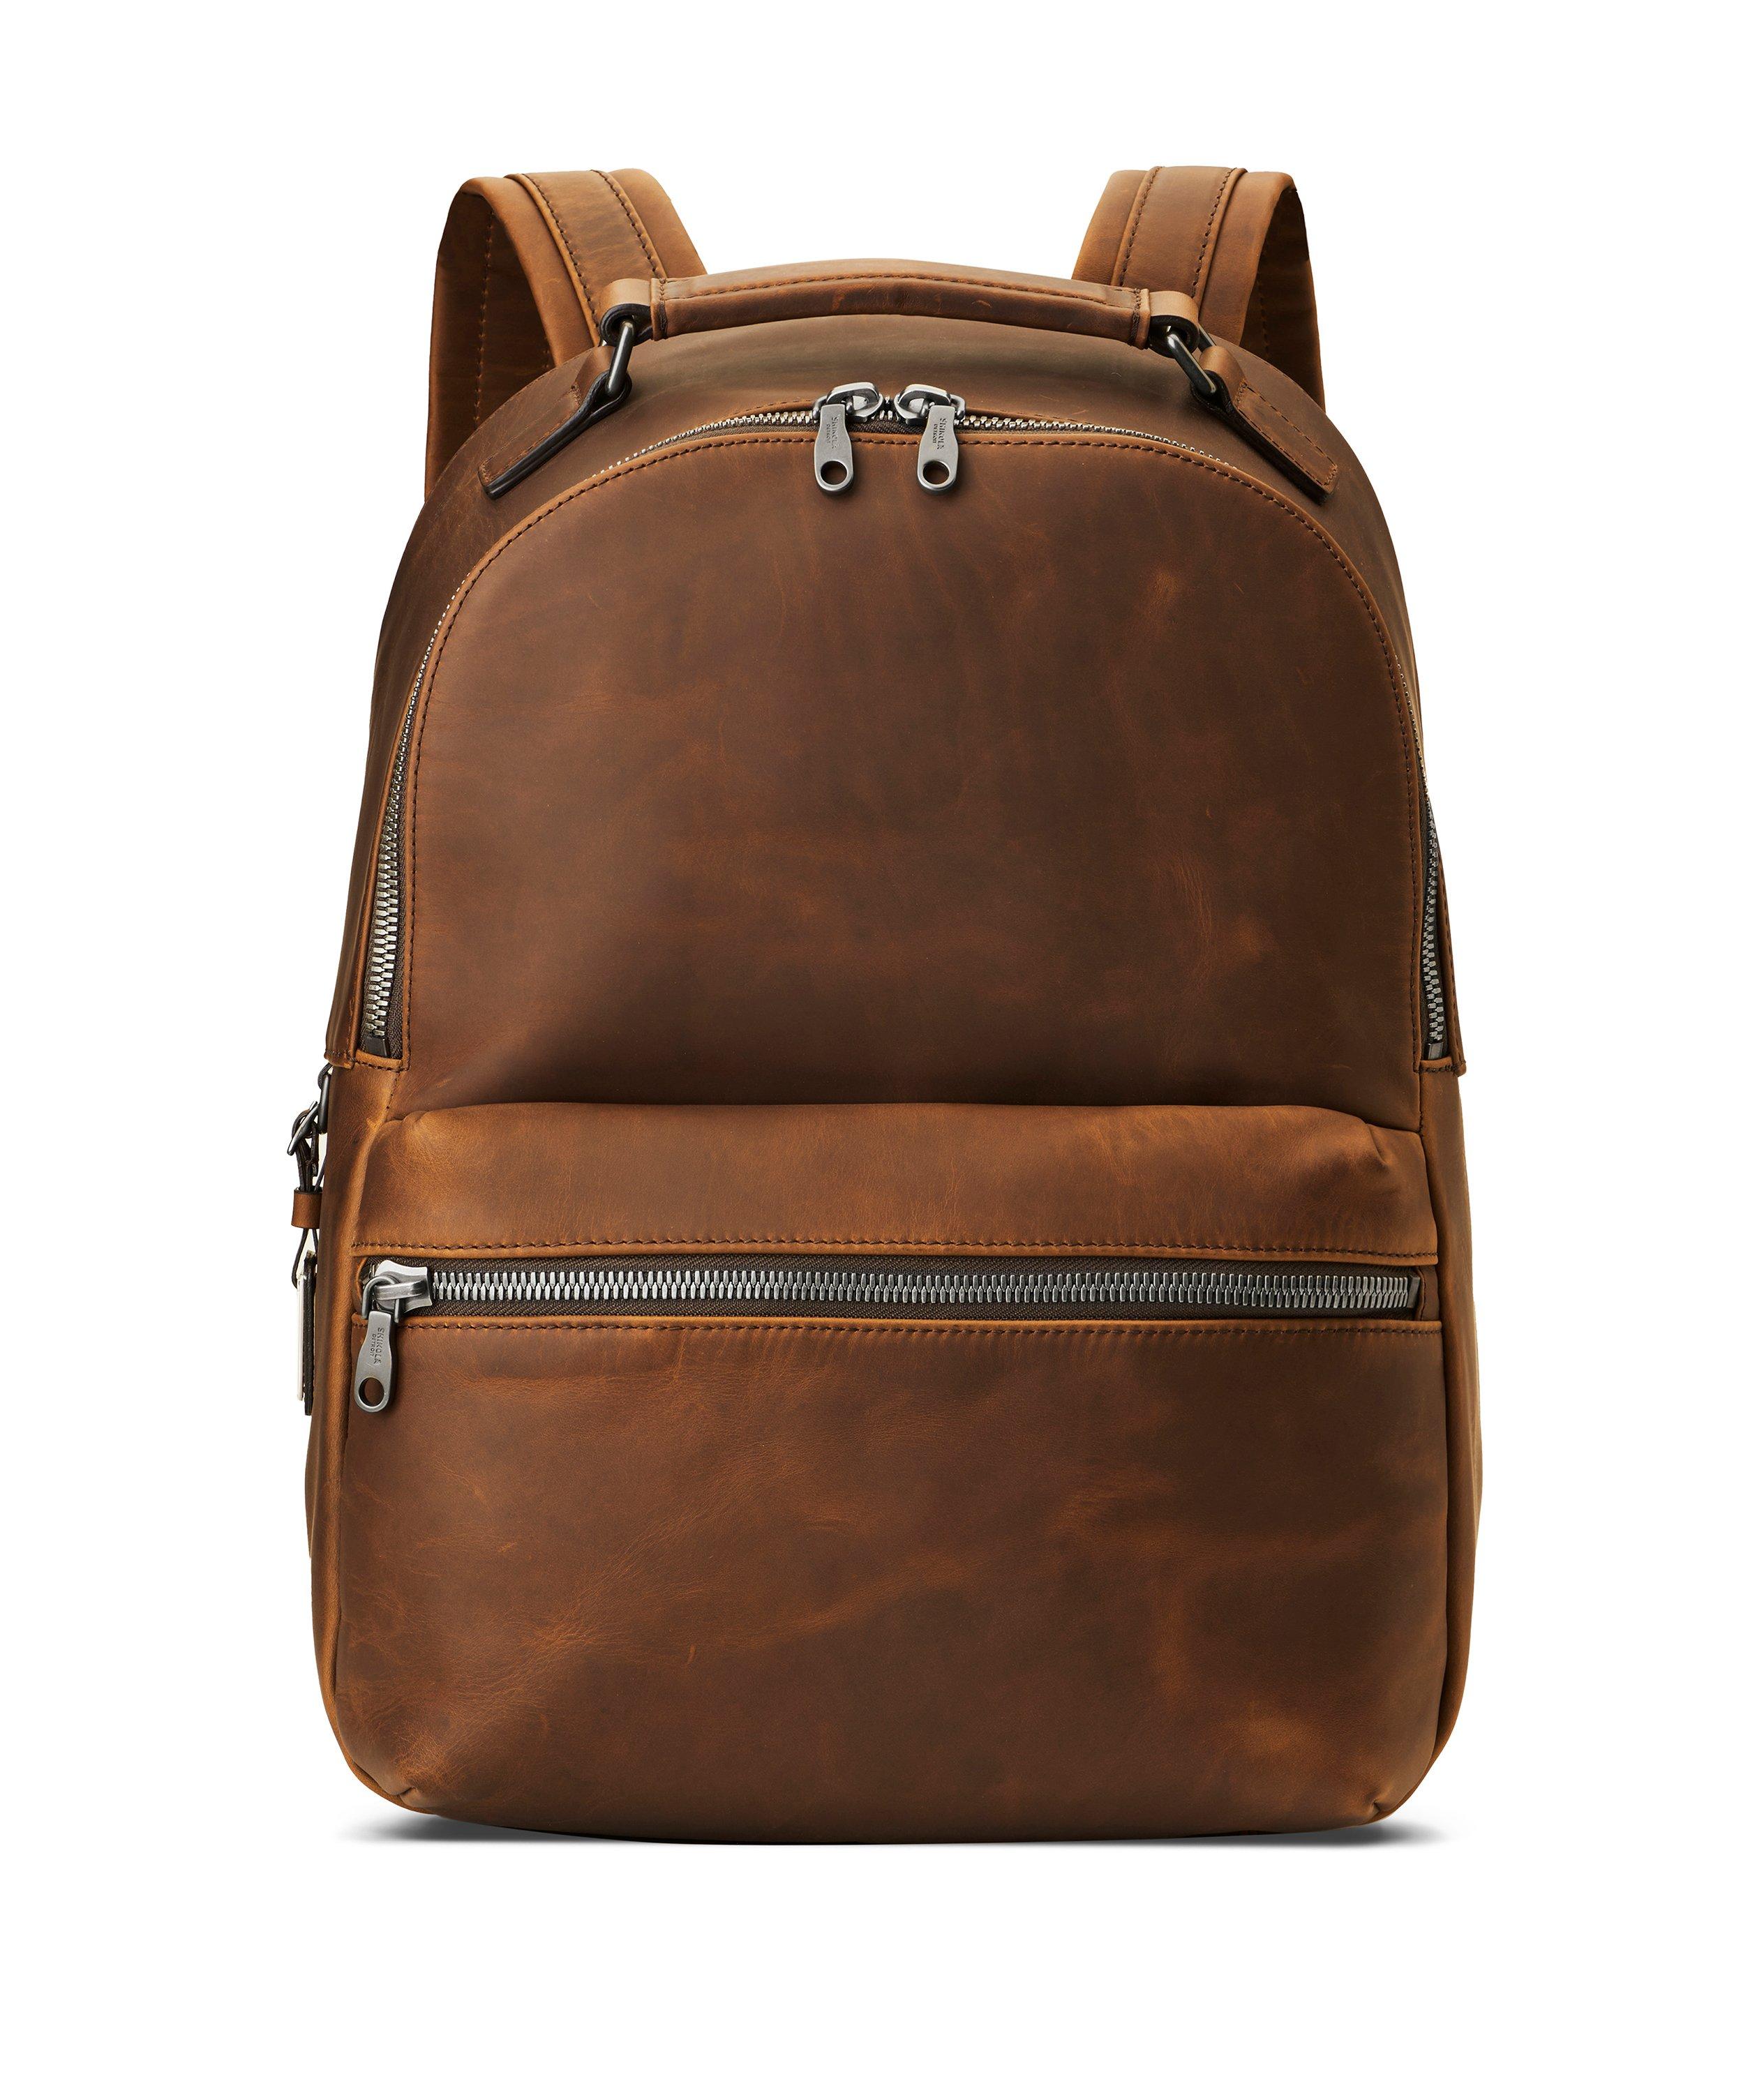 The Runwell Navigator Leather Backpack